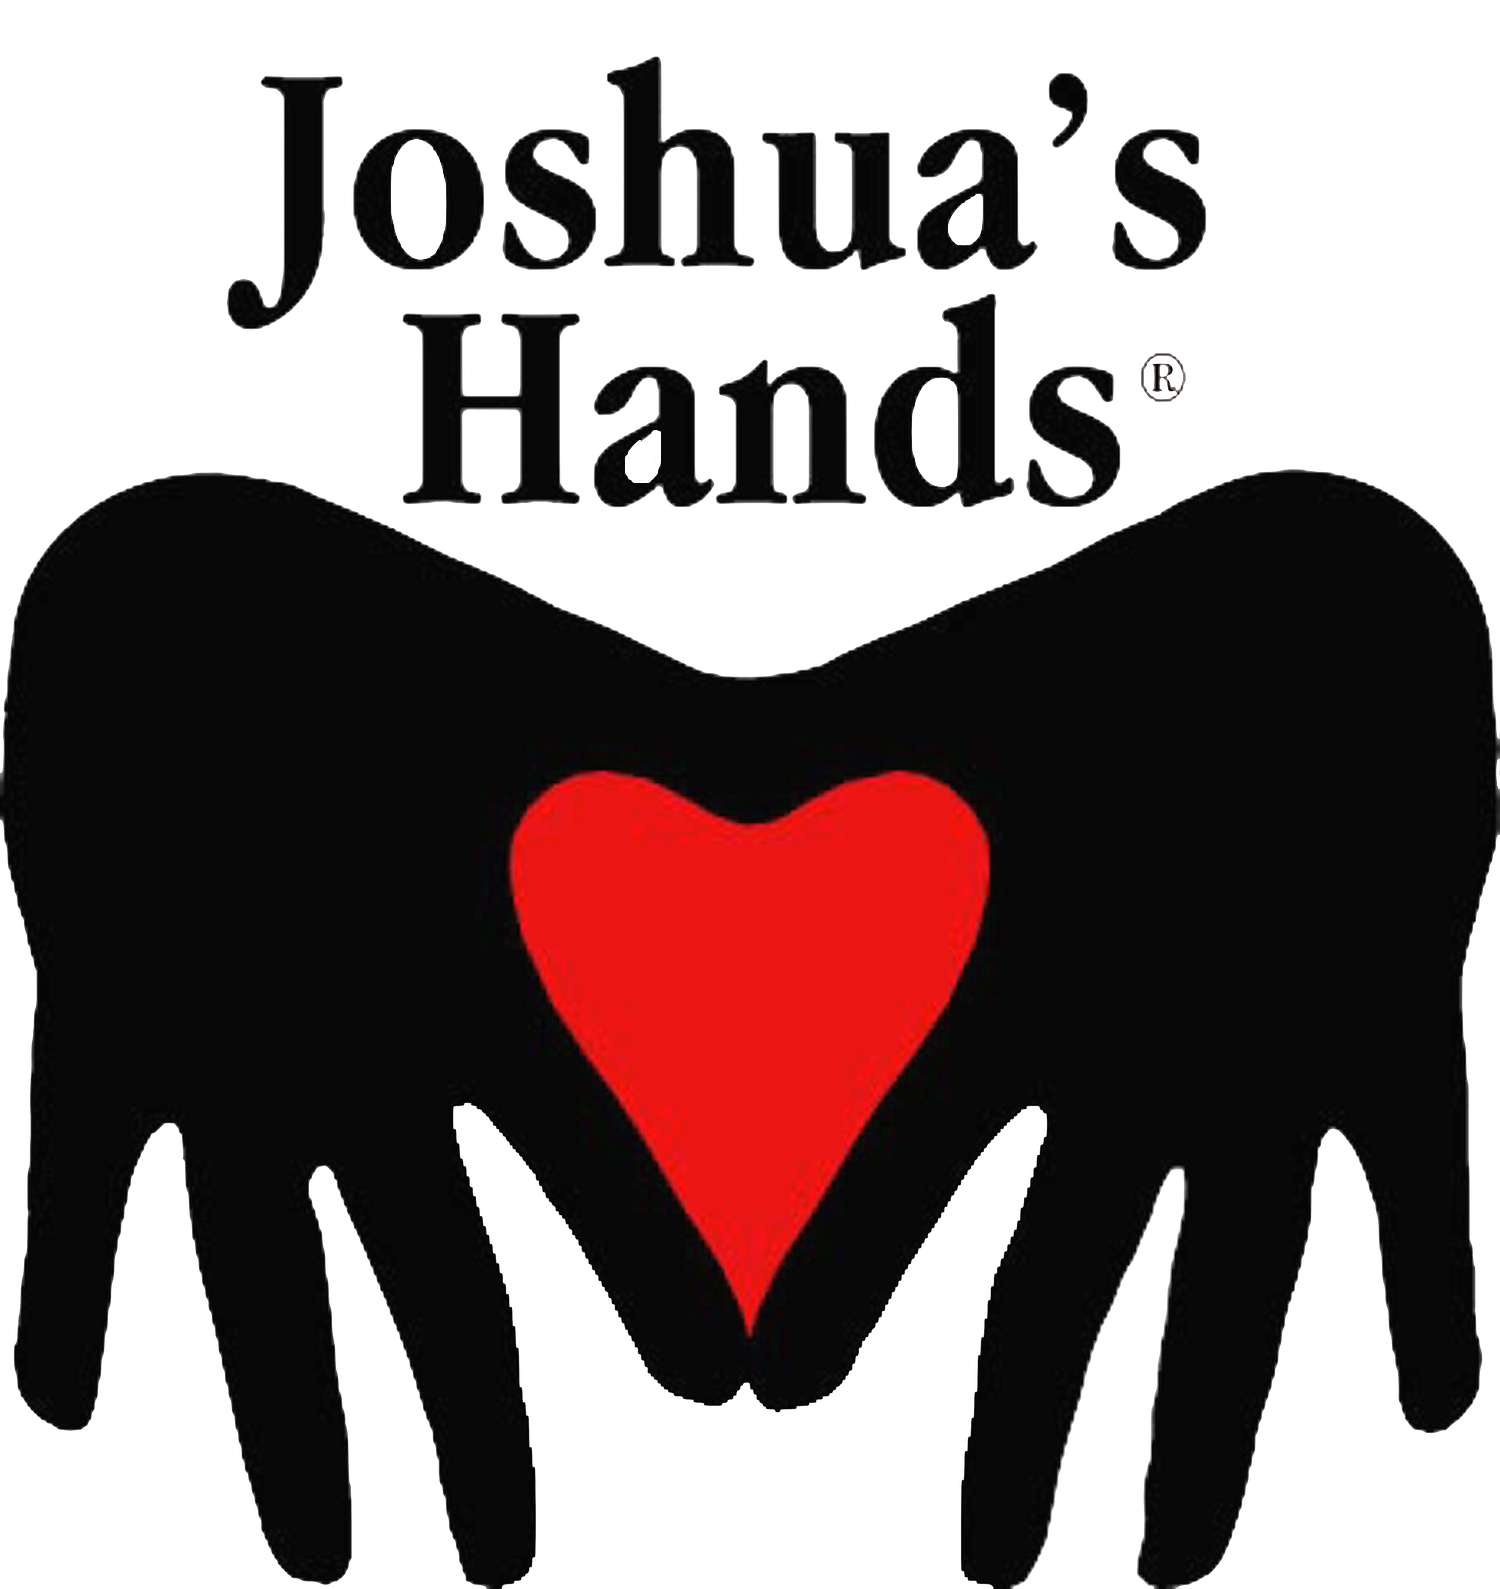 Joshua’s Hands